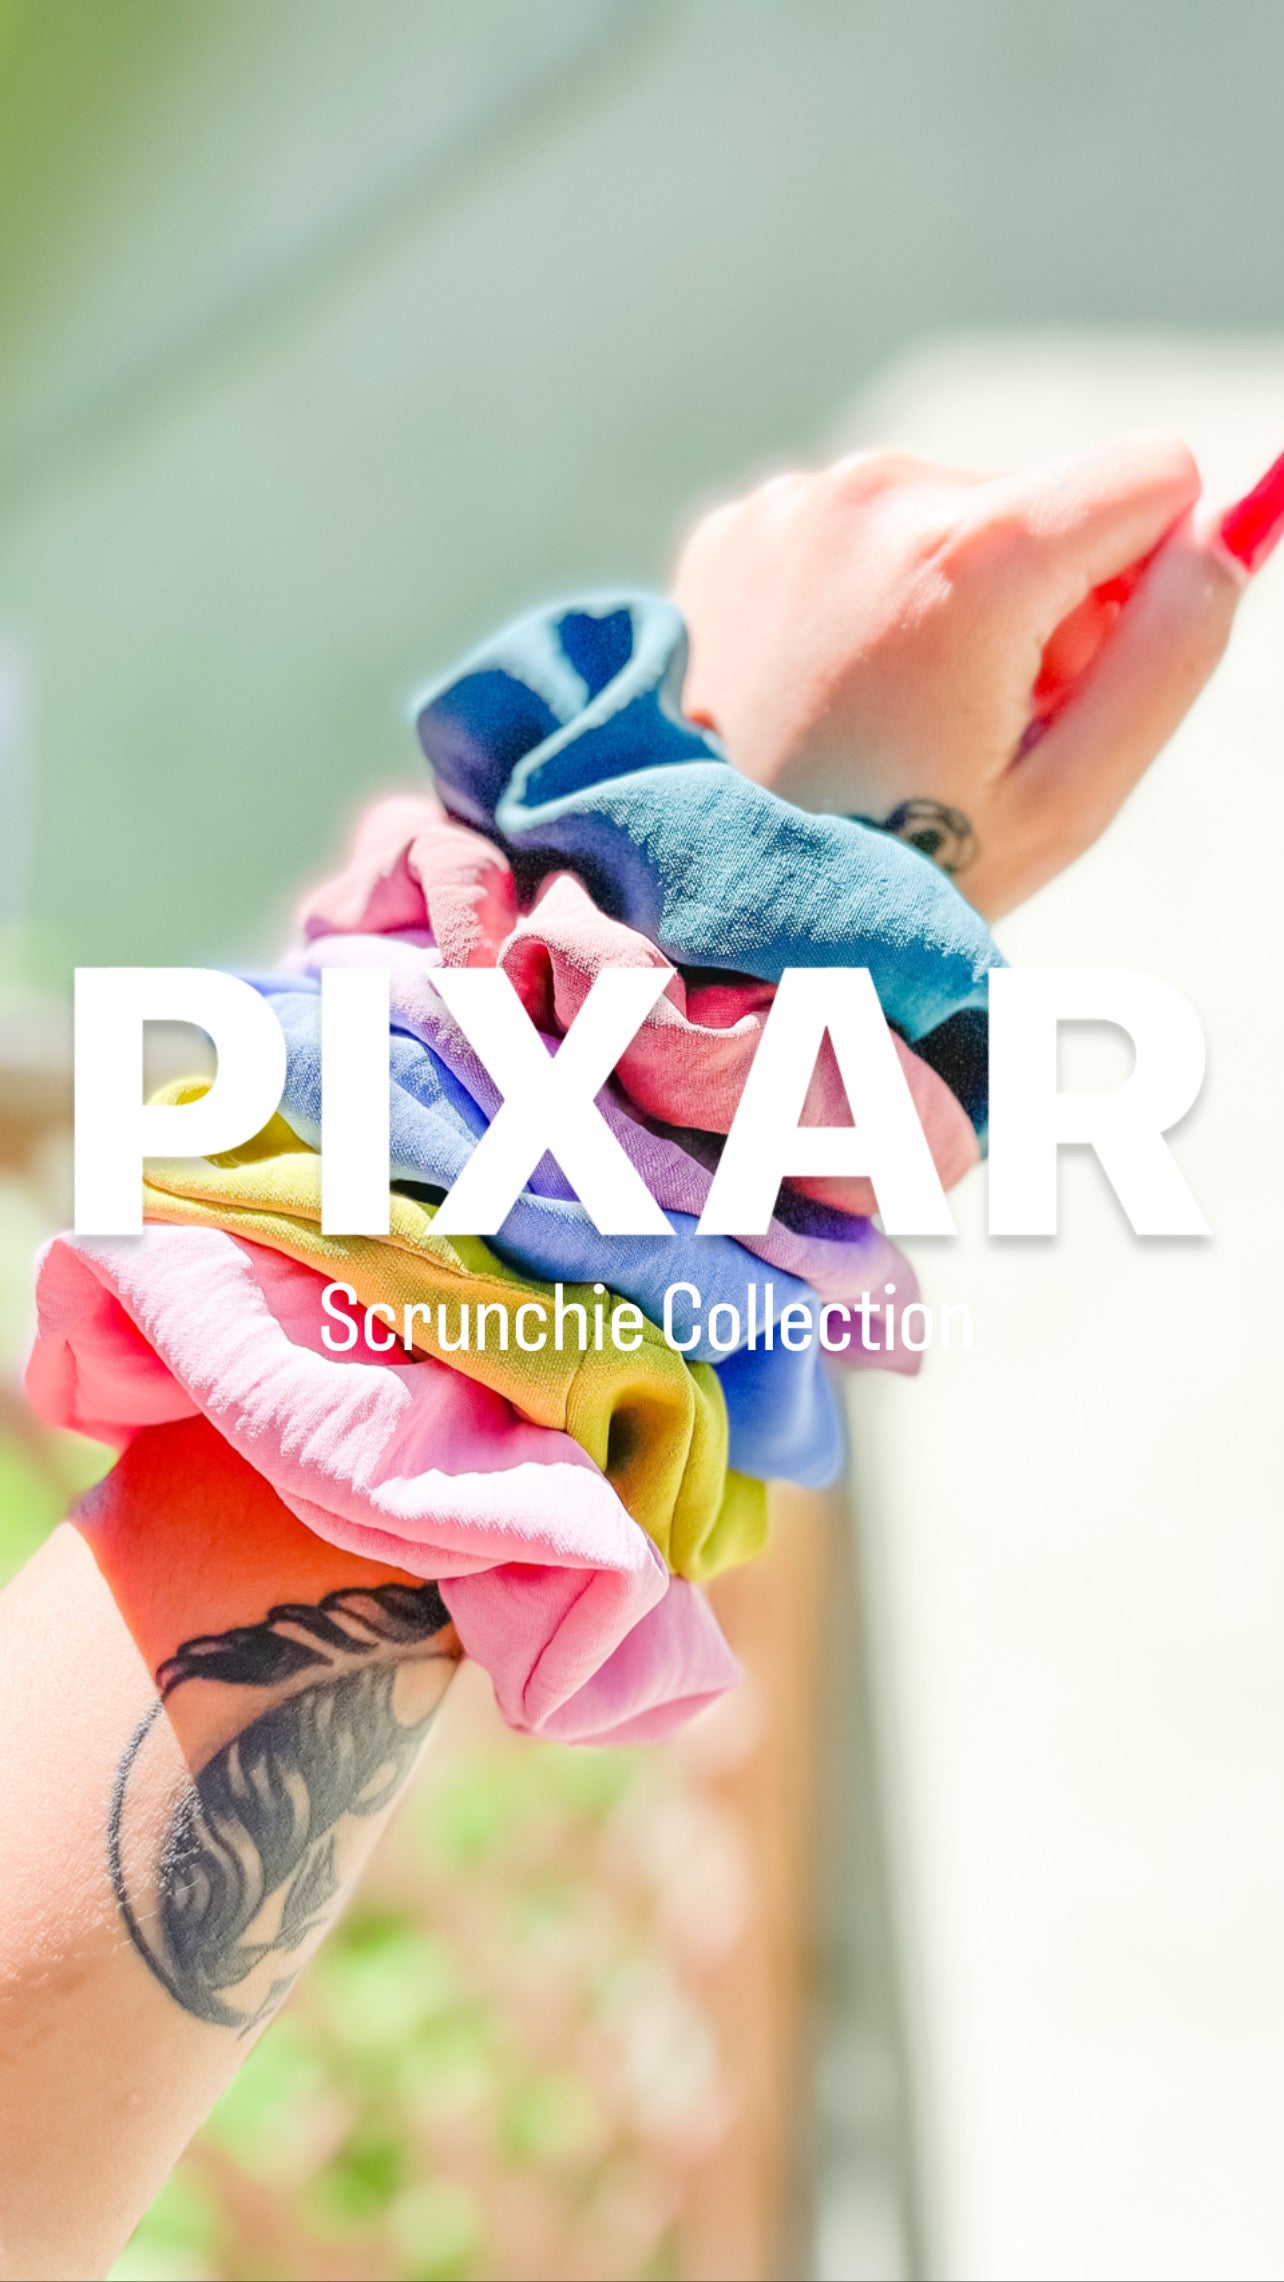 Pixar Collection Scrunchie